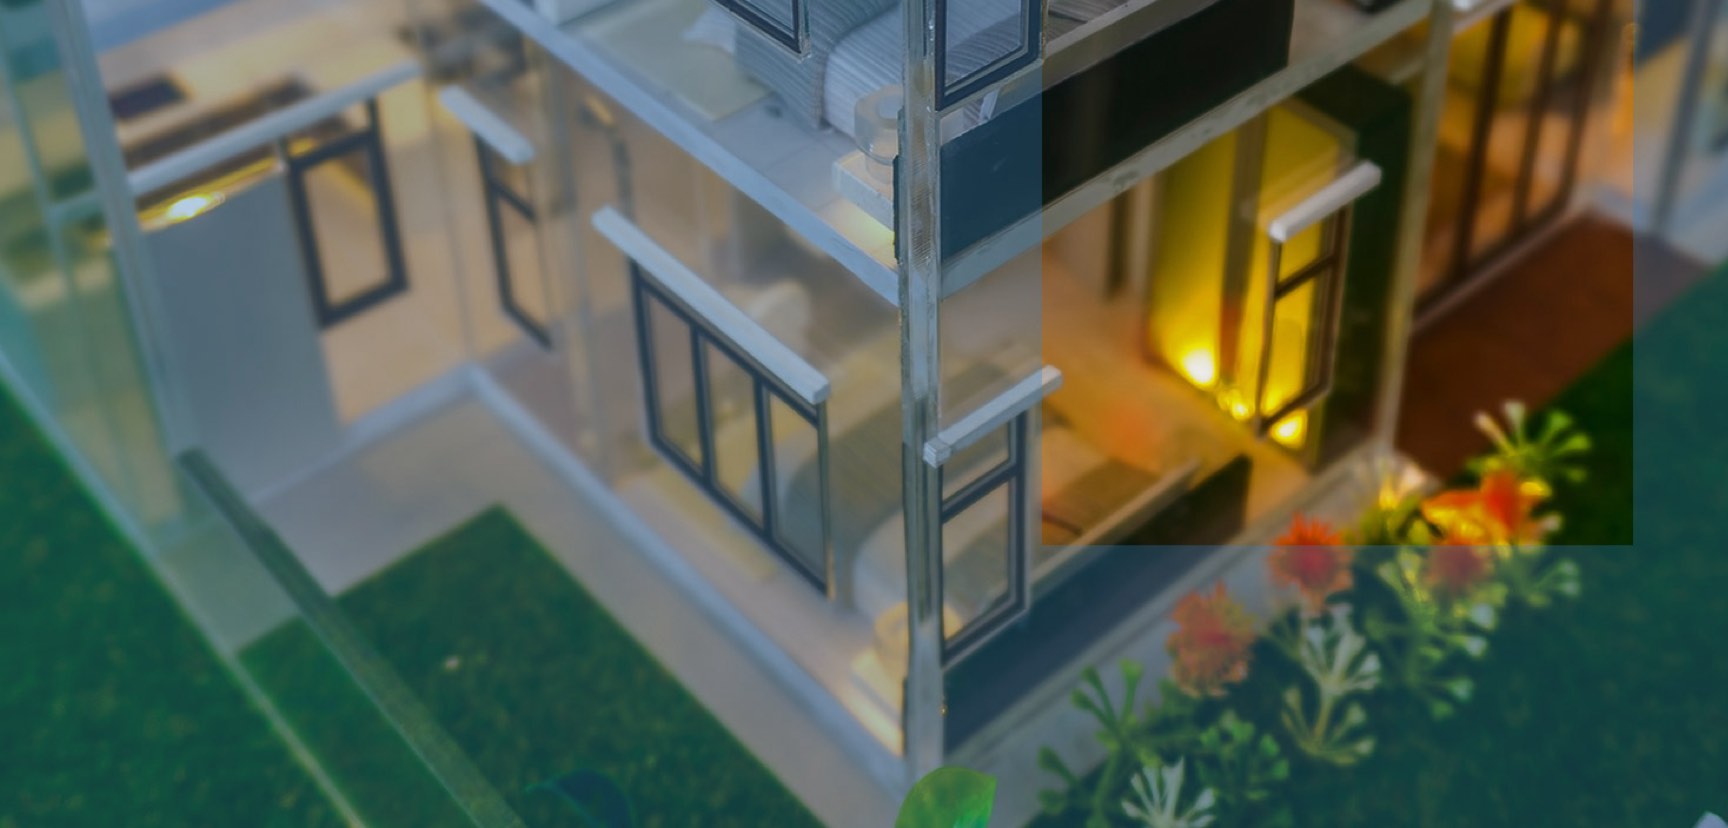 Architektonisches Modell eines Hauses